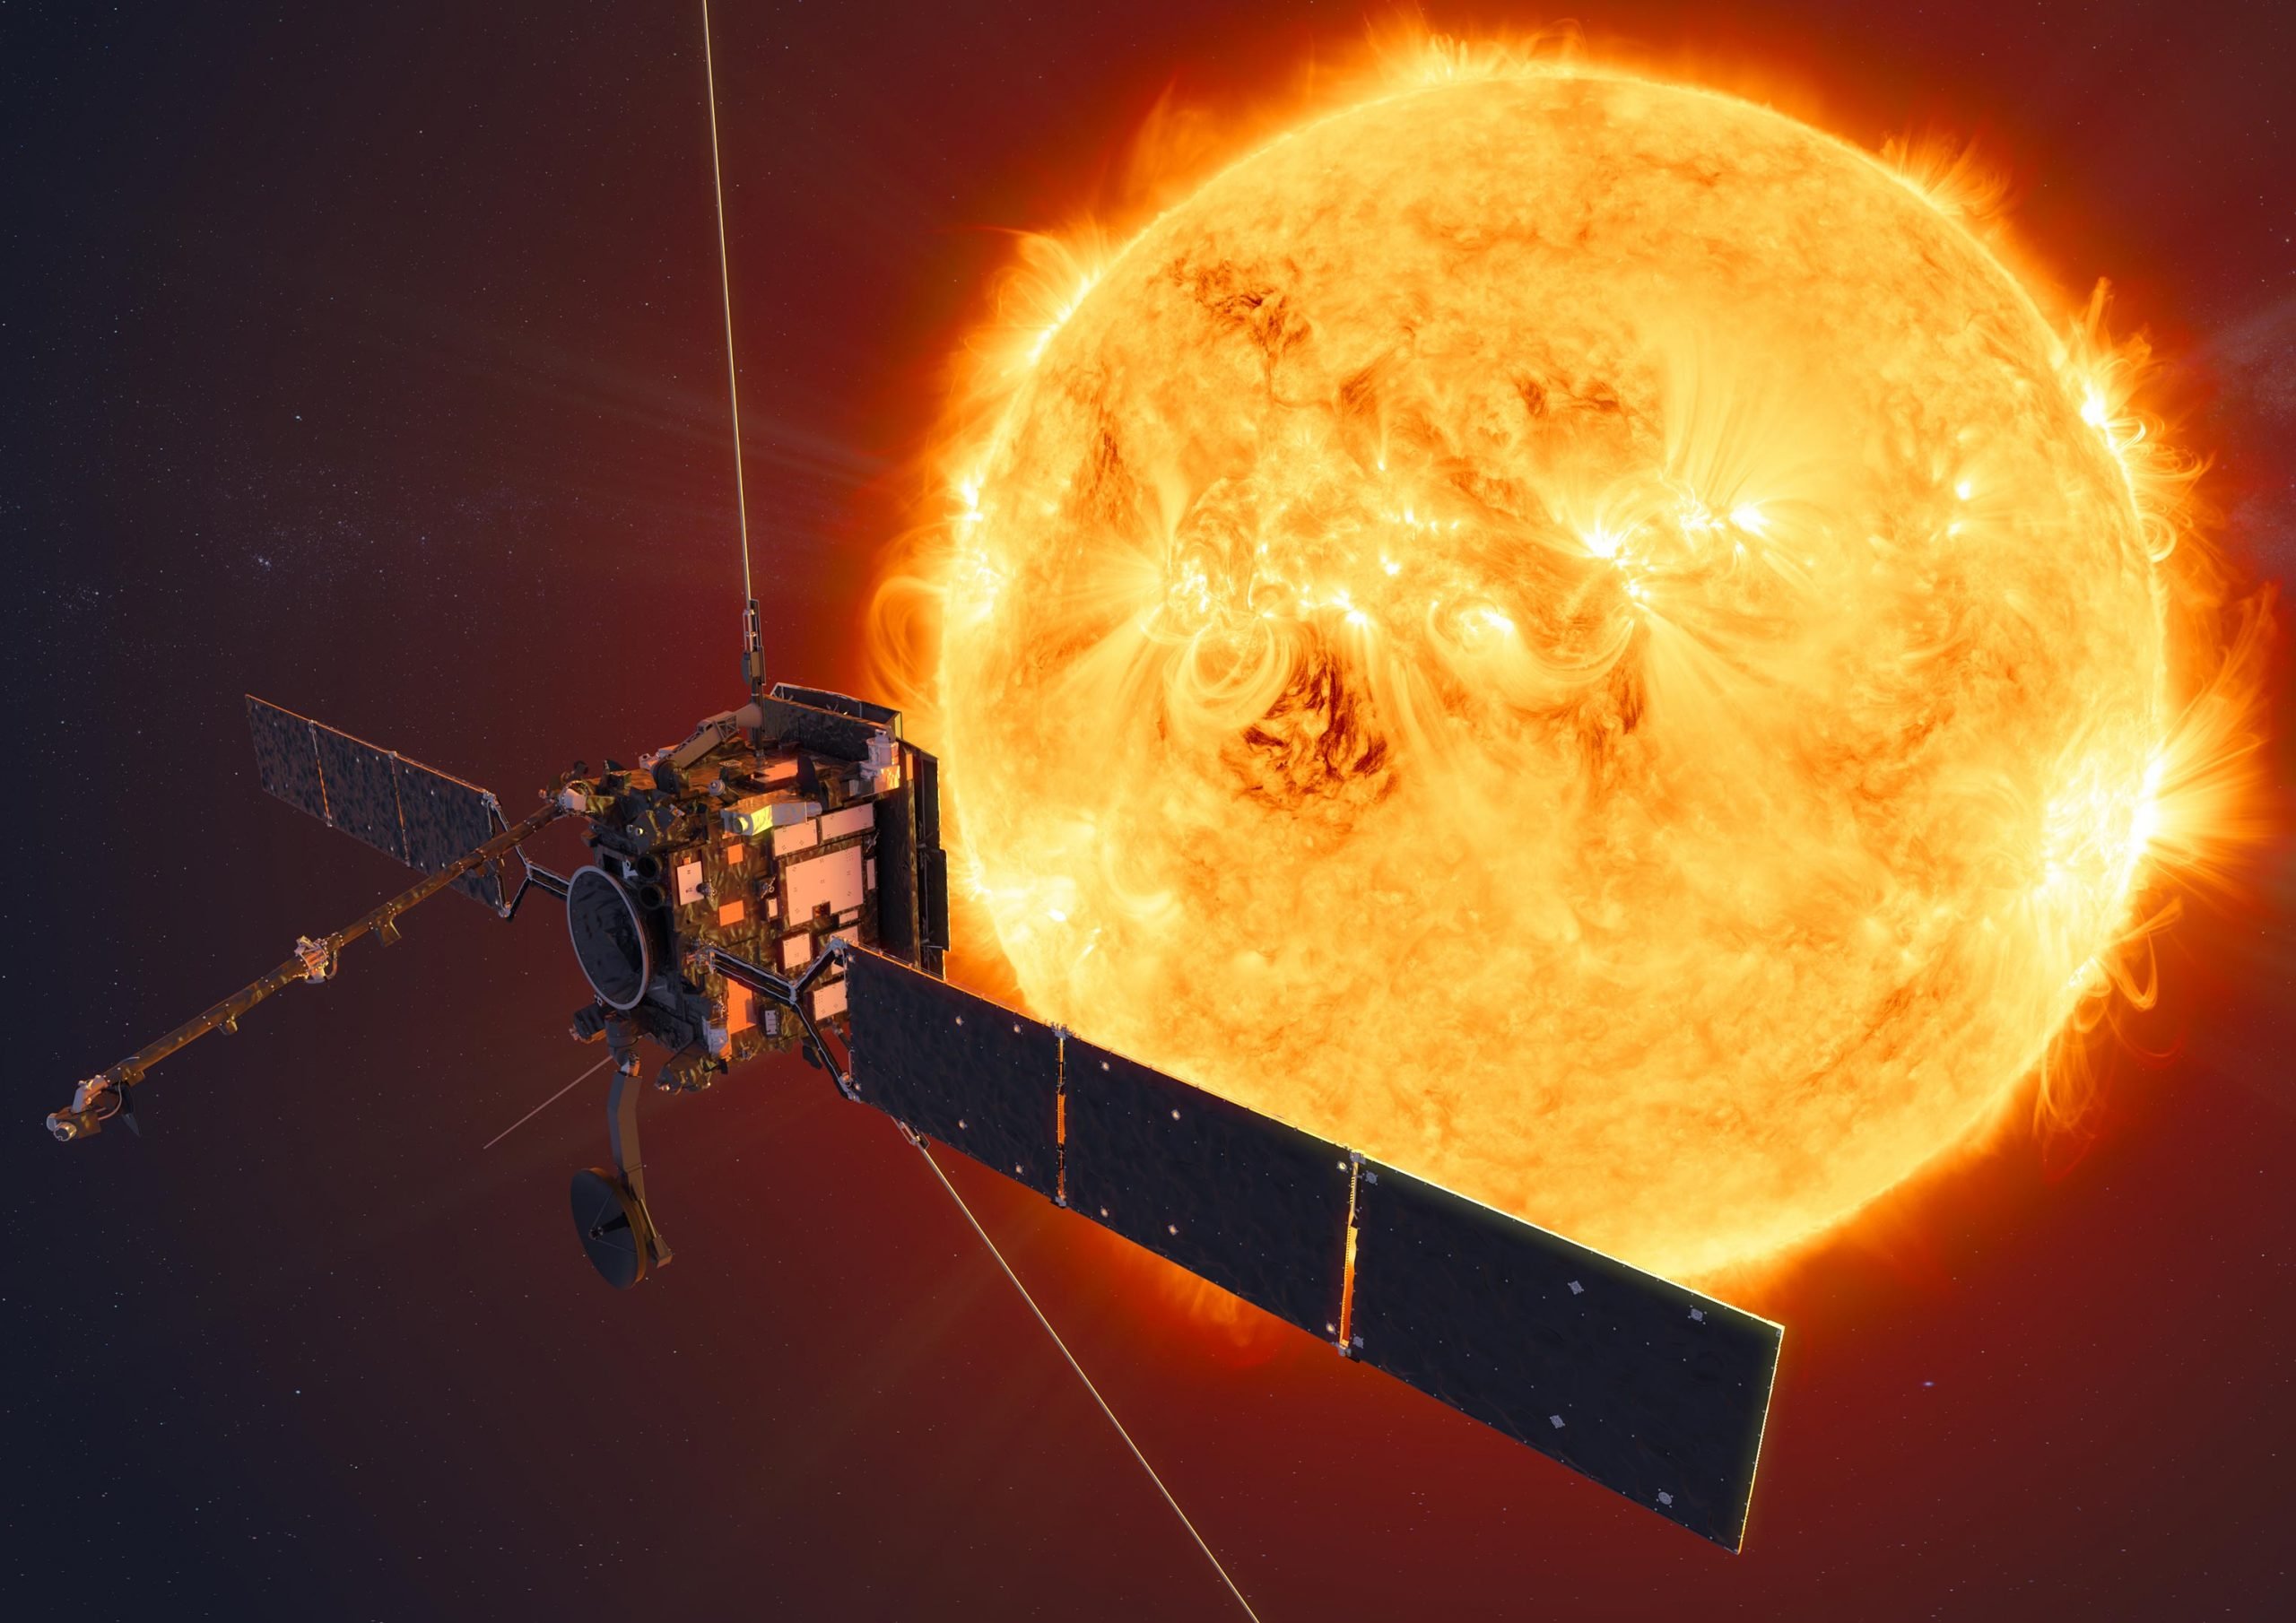 Le module solaire en orbite capture la délicate couronne solaire avec des détails époustouflants [Video]